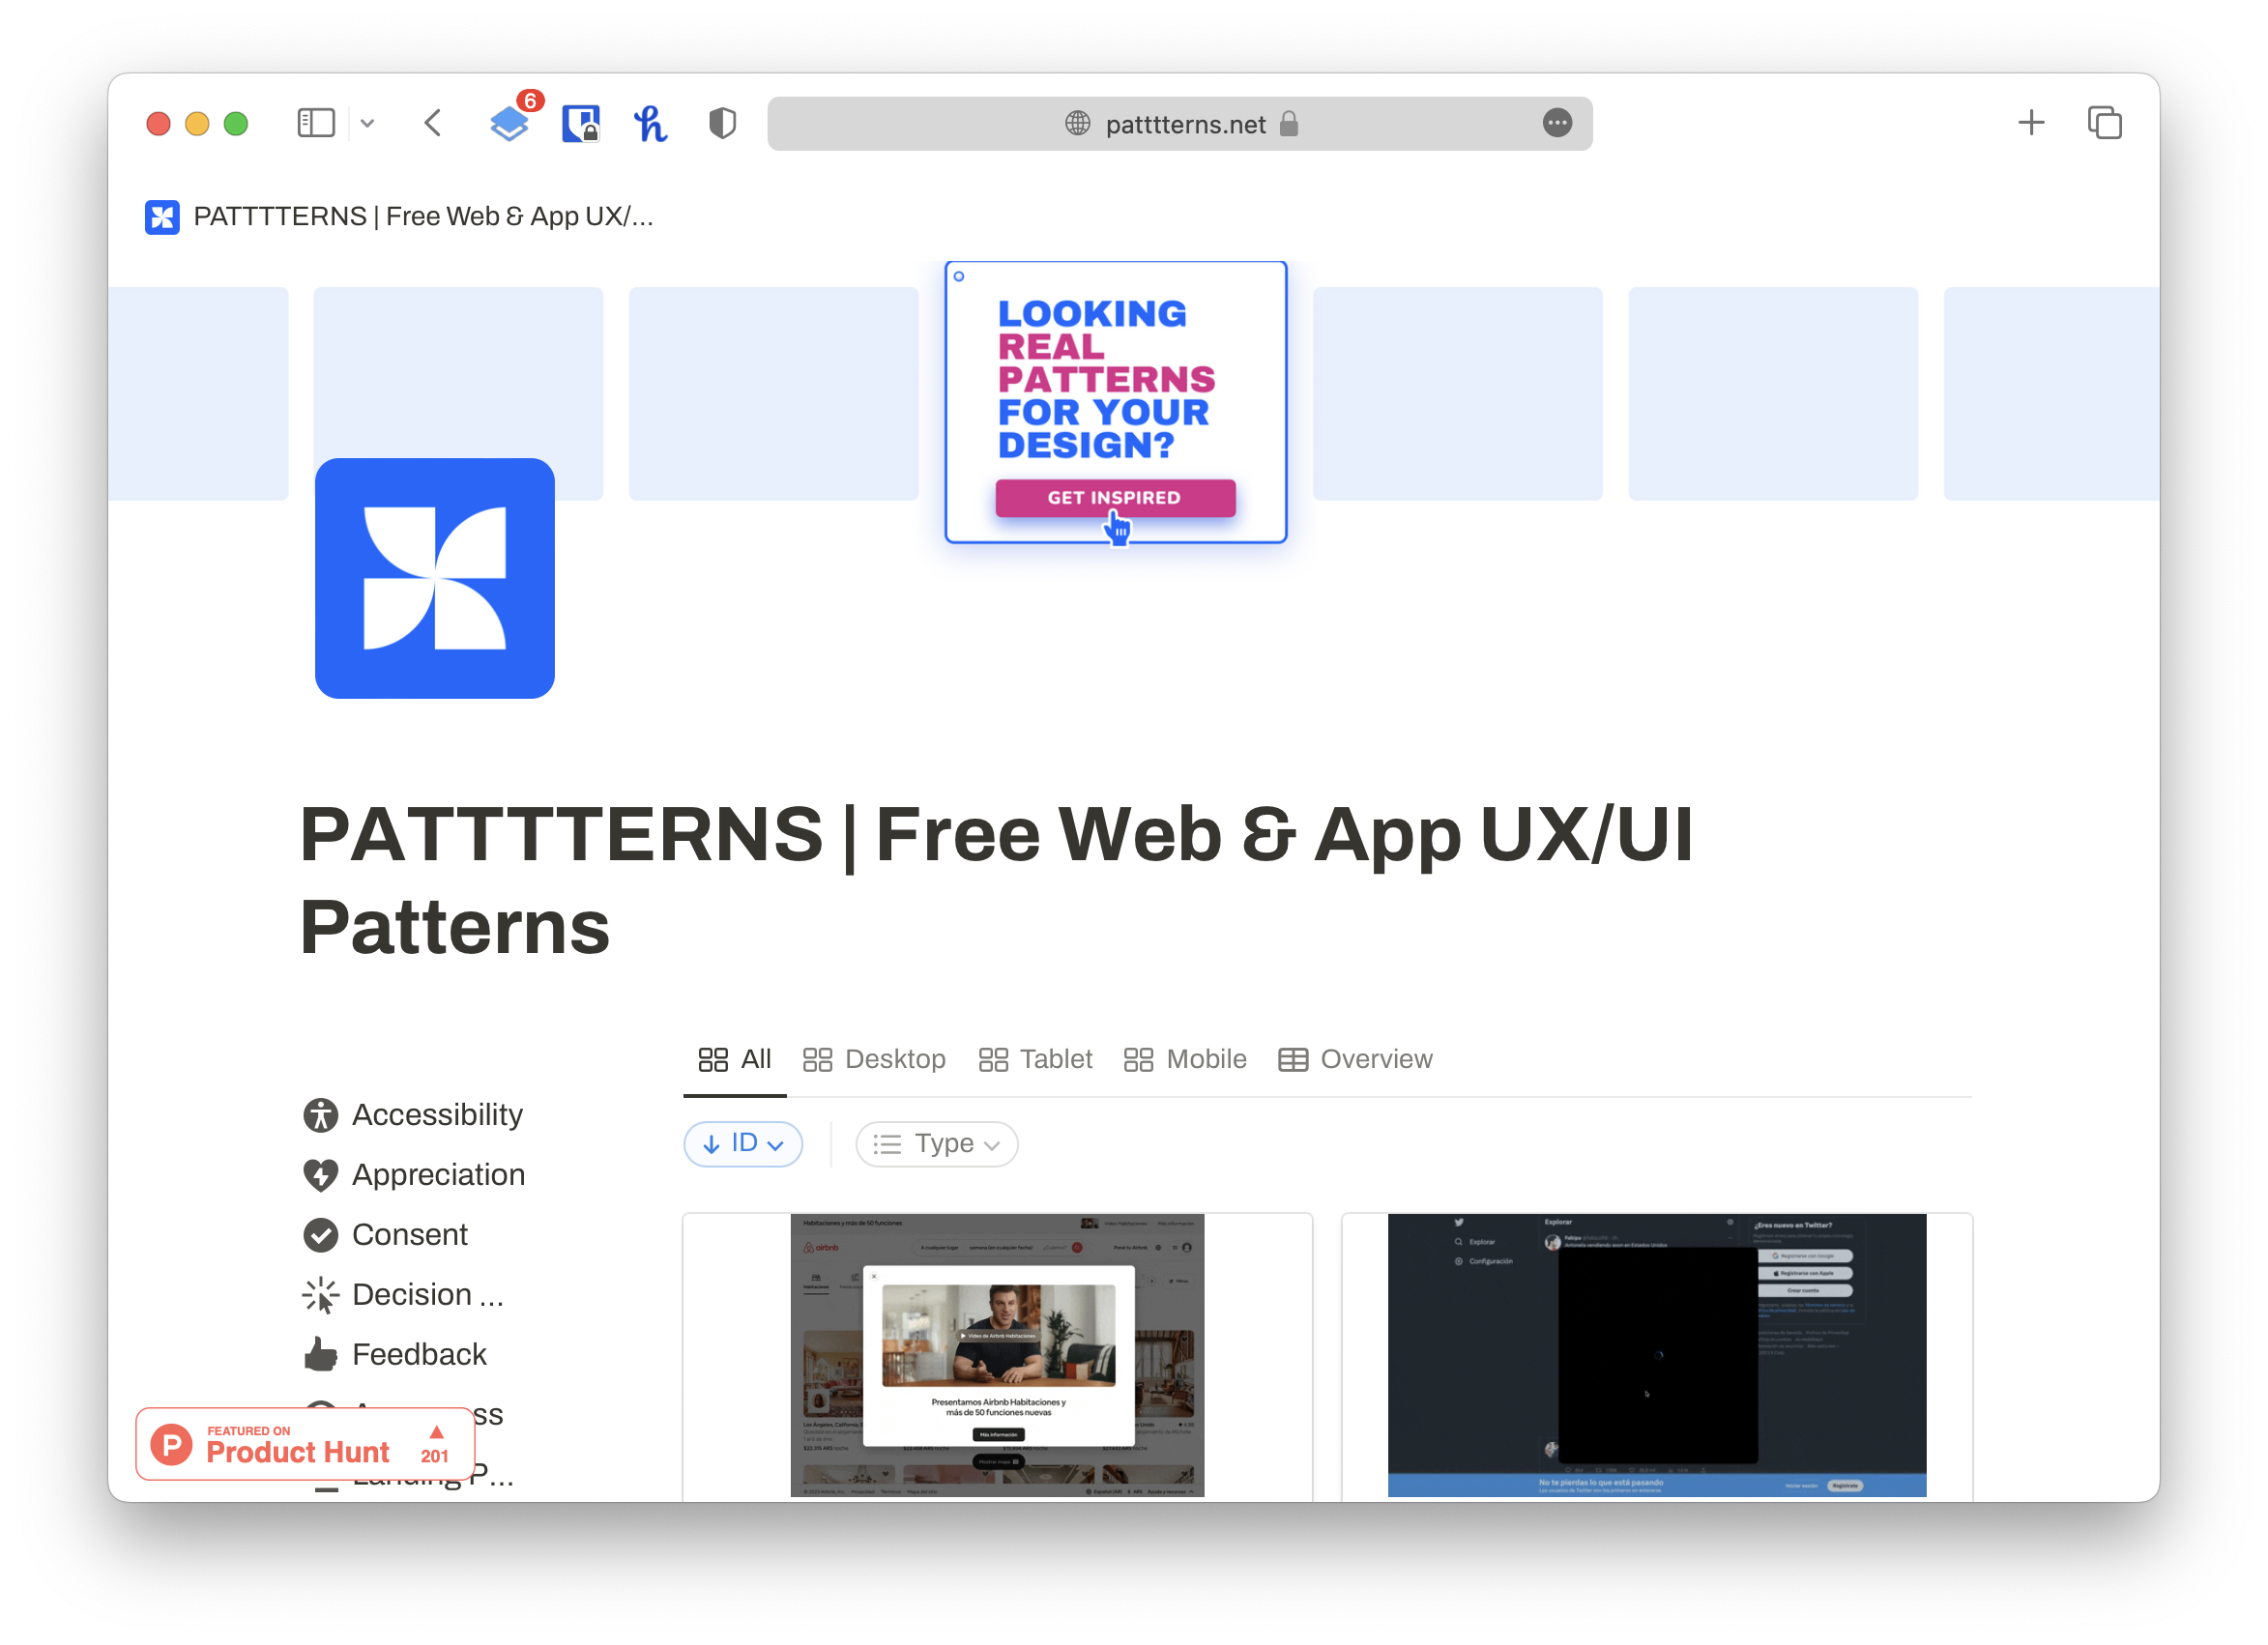 Patttterns.net